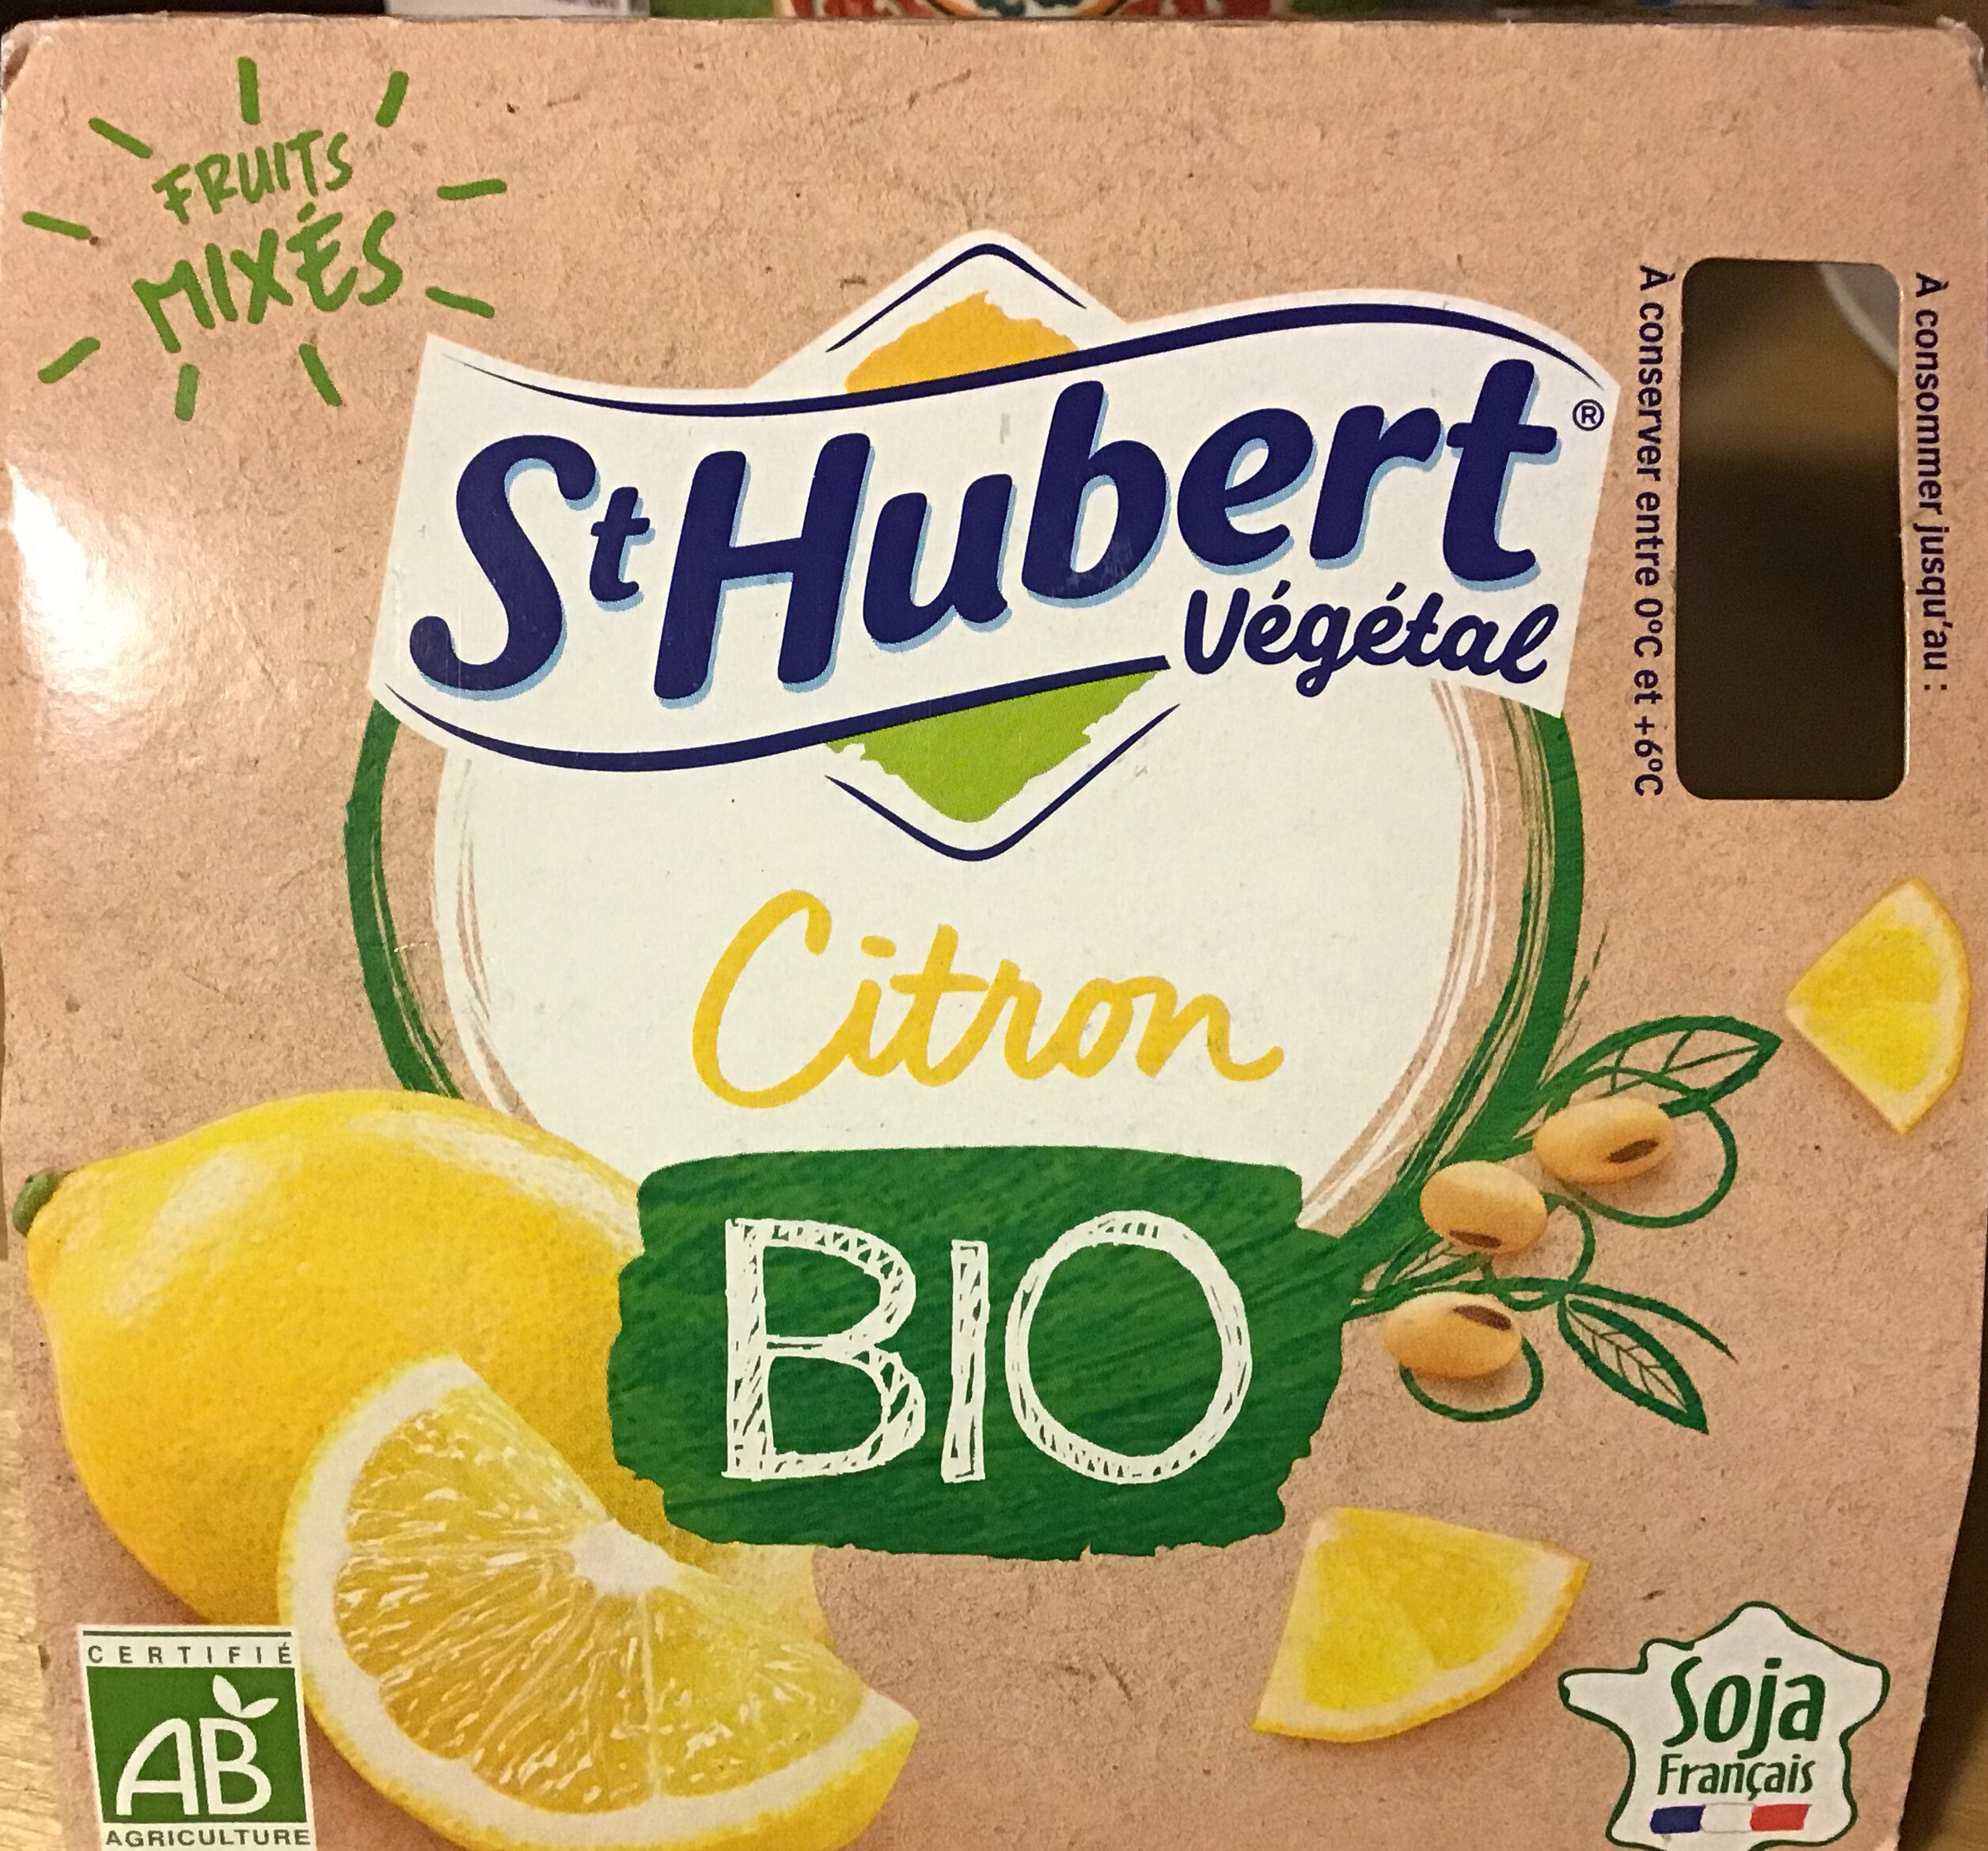 St Hubert Végétal Citron Bio - Producto - fr